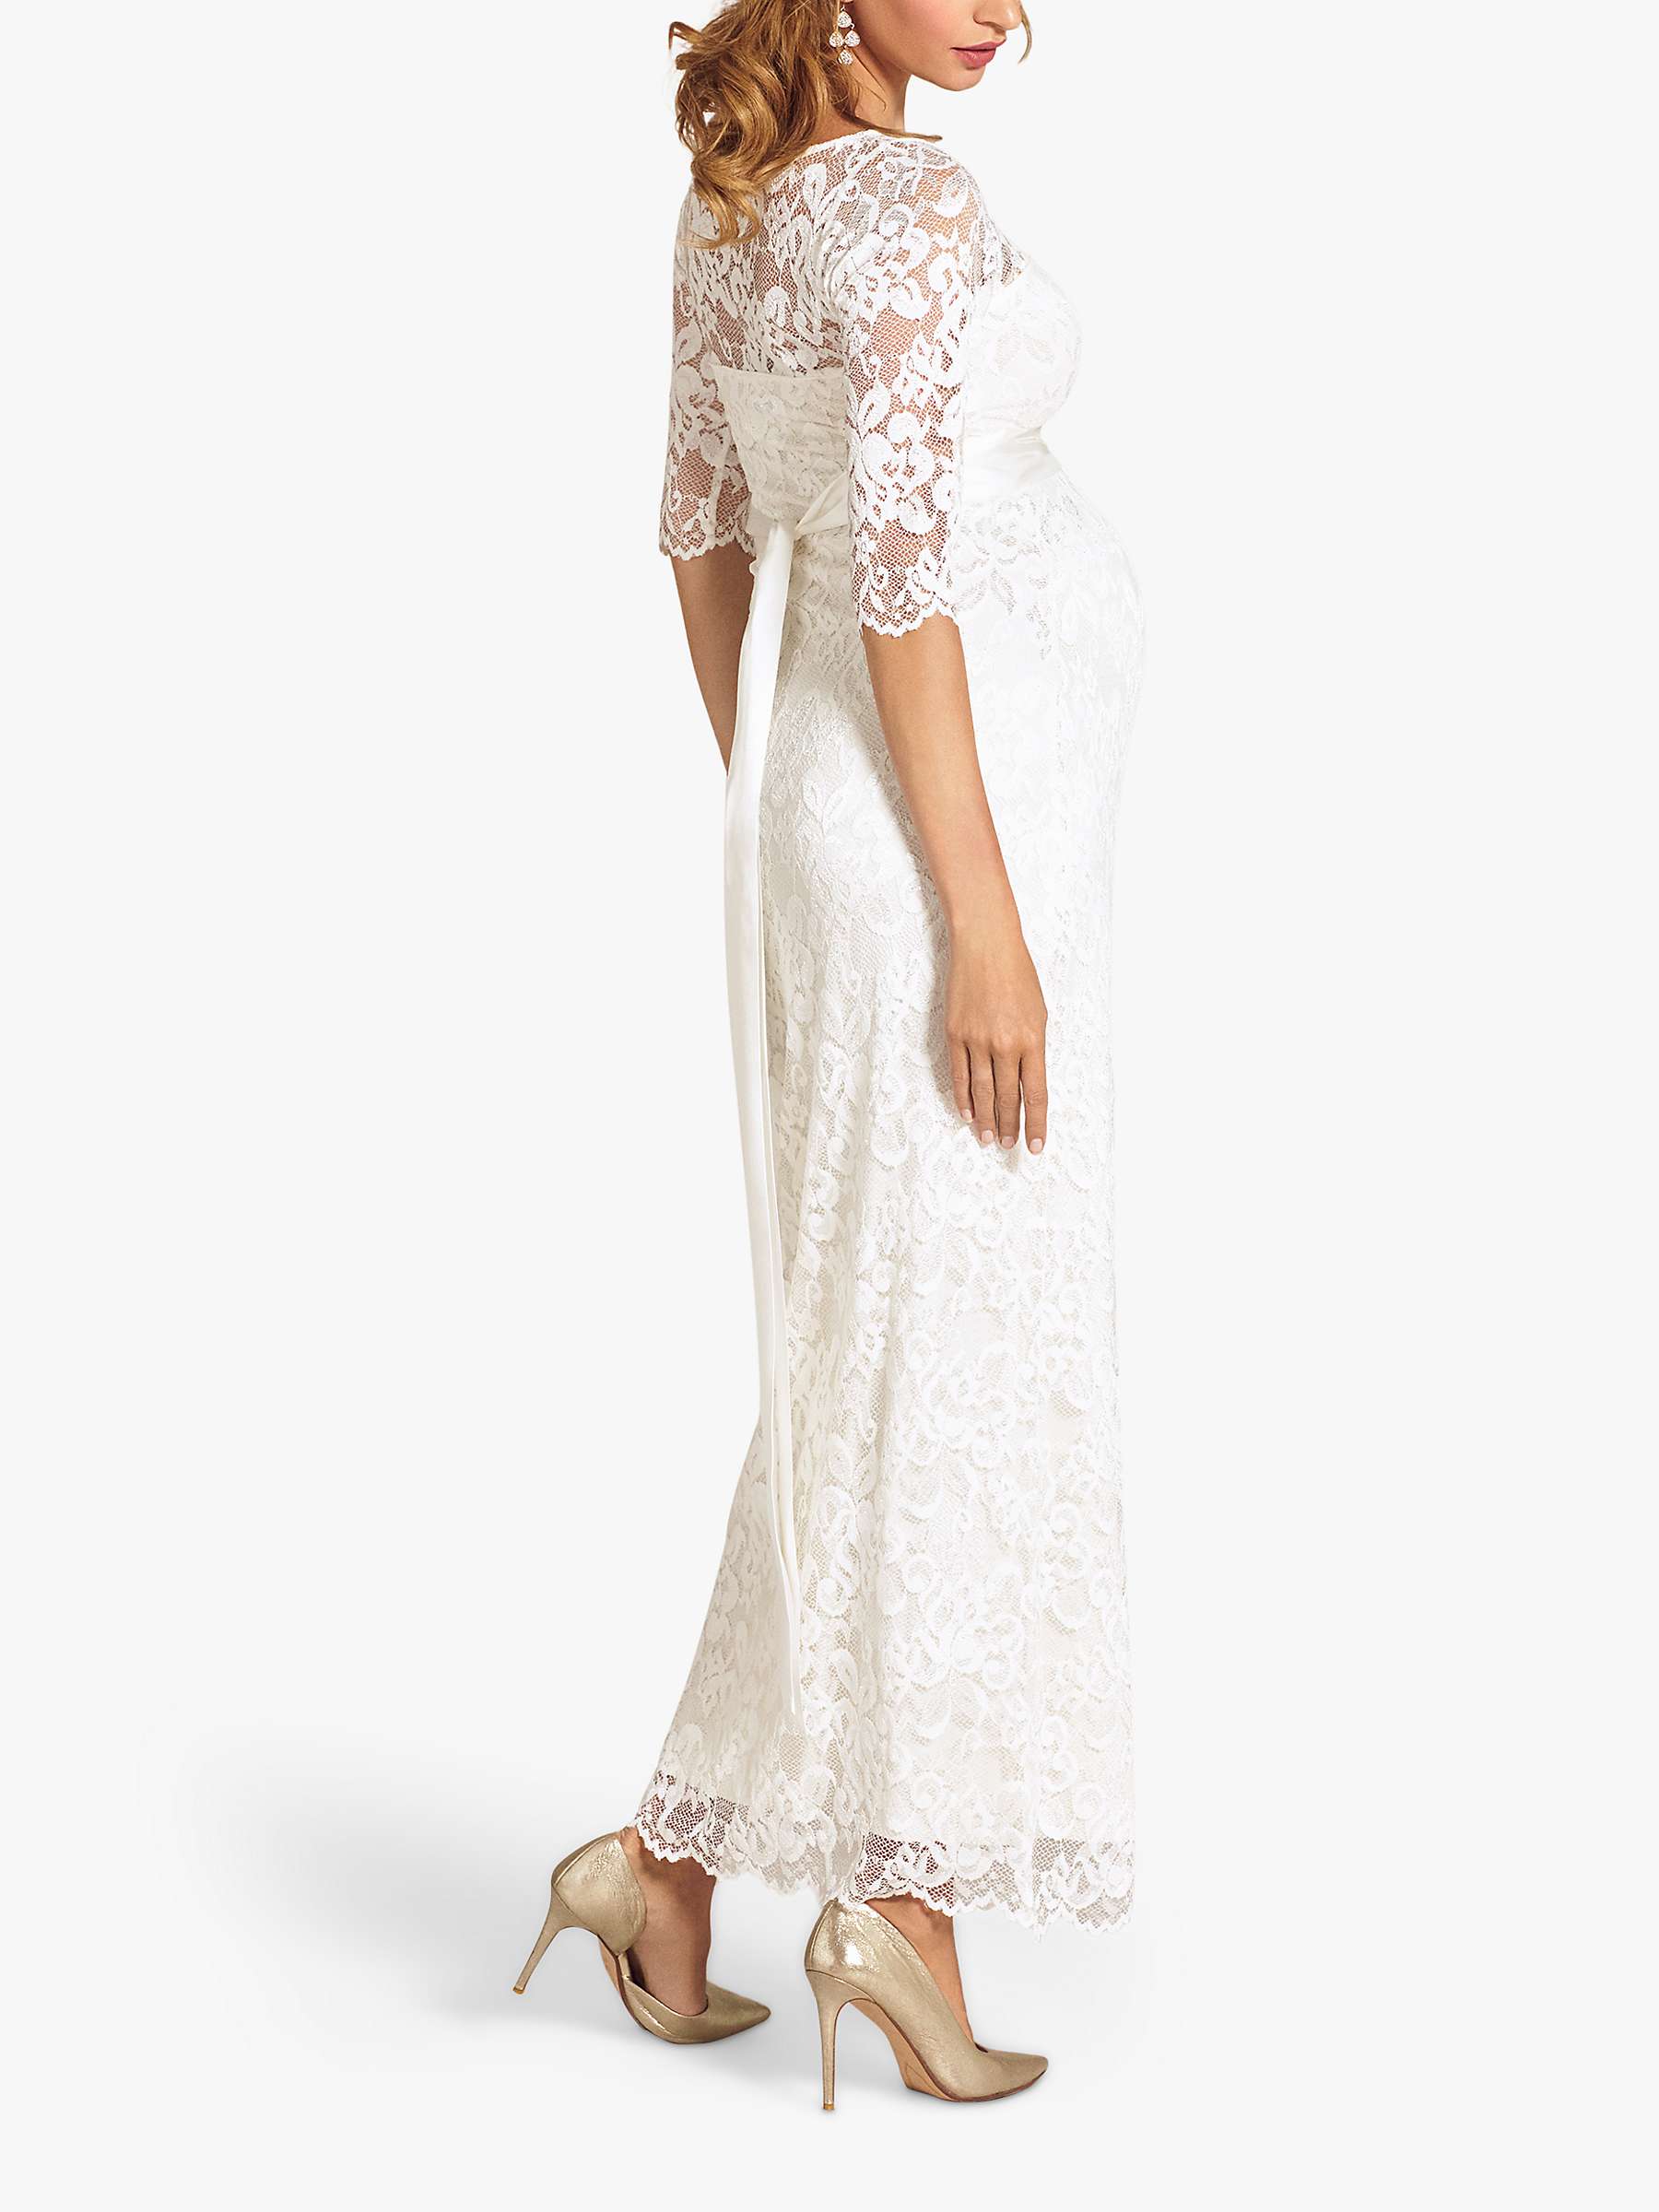 Buy Tiffany Rose Amelia Lace Maternity Wedding Dress, Ivory Online at johnlewis.com